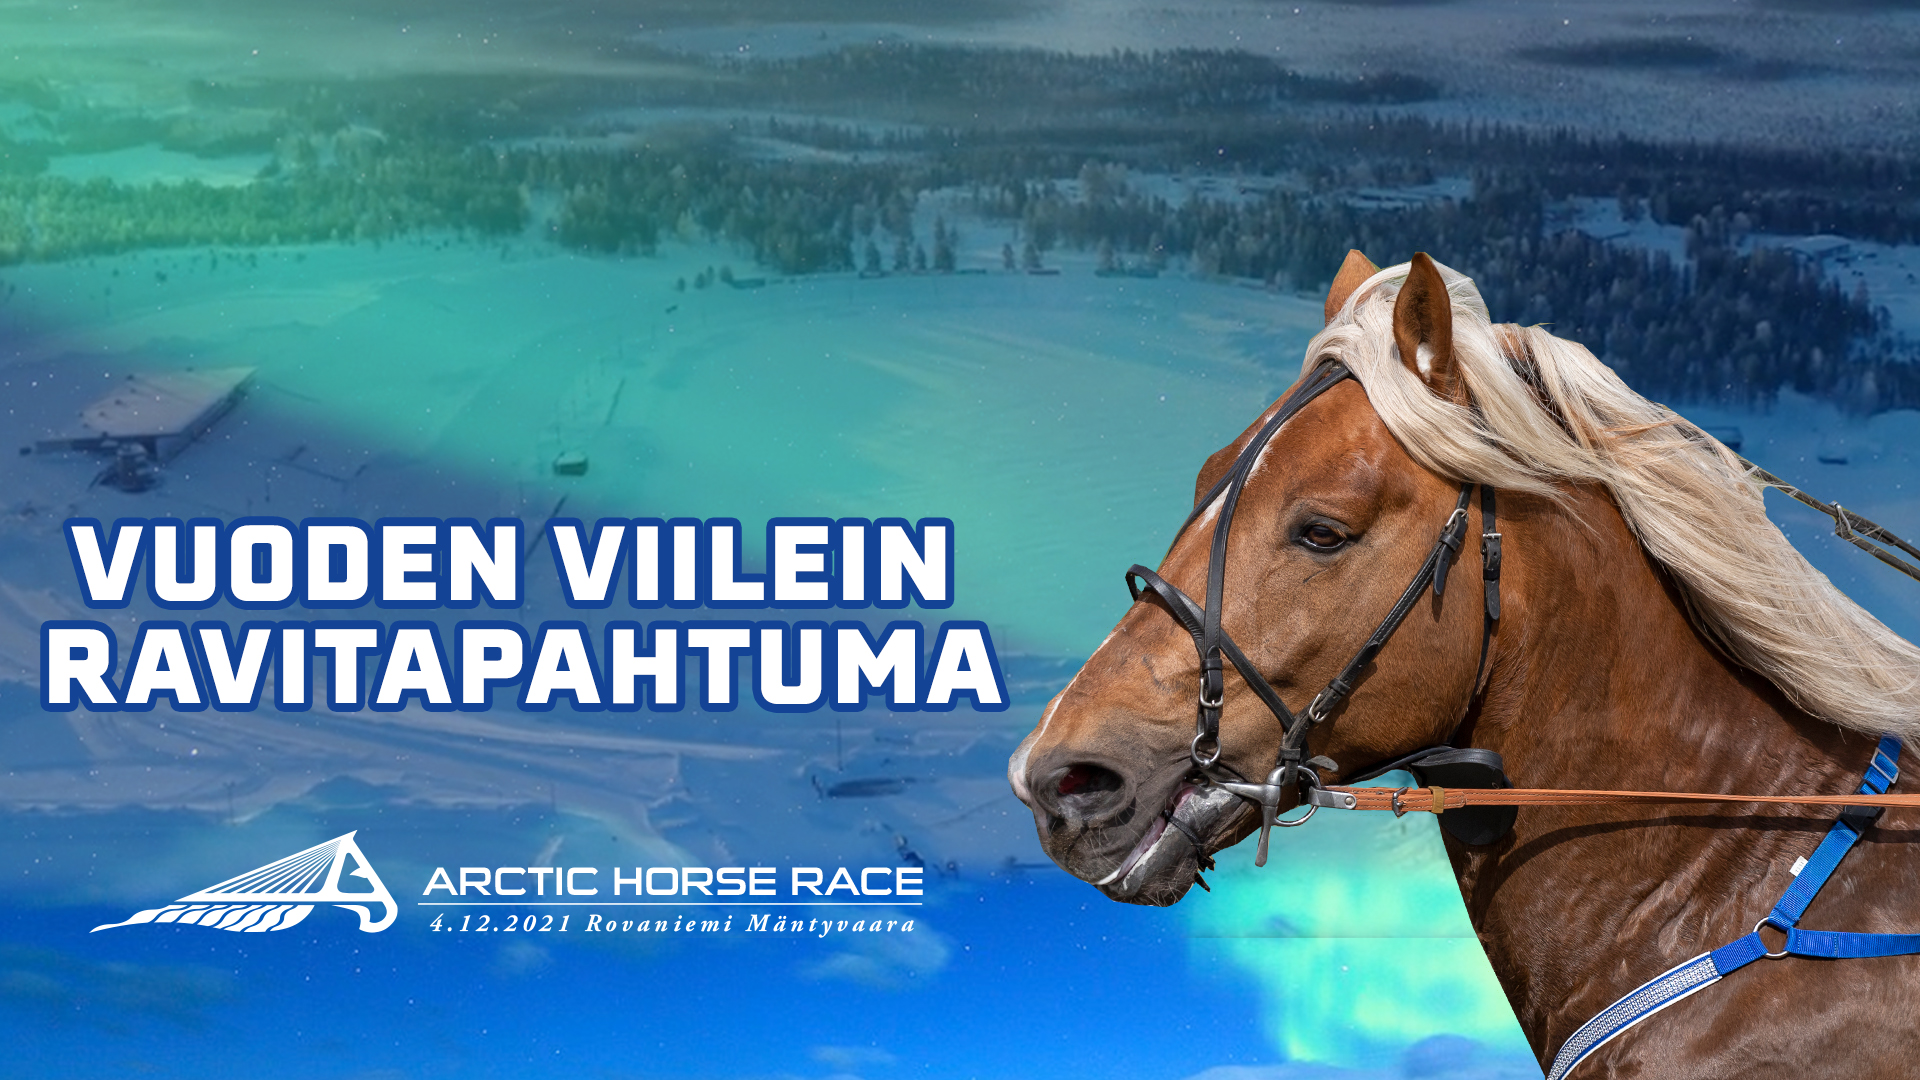 Arctic Horse Race 2021 median akkreditointi avattu